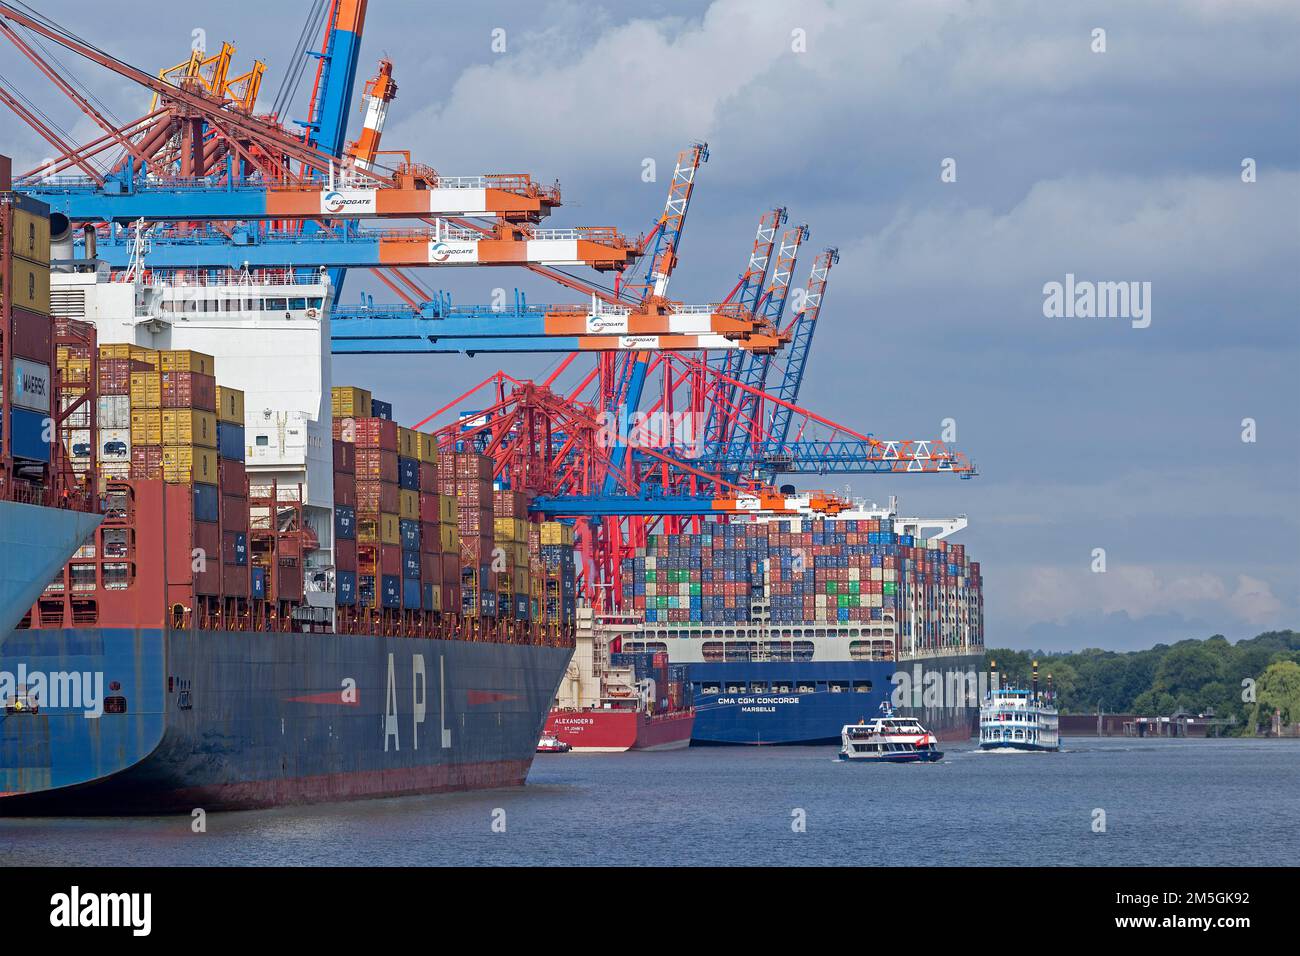 Containerschiffe und Ausflugsboote, Paddeldampfer Louisiana Star, Containerterminal Eurogate, Waltershof, Hamburg, Deutschland Stockfoto